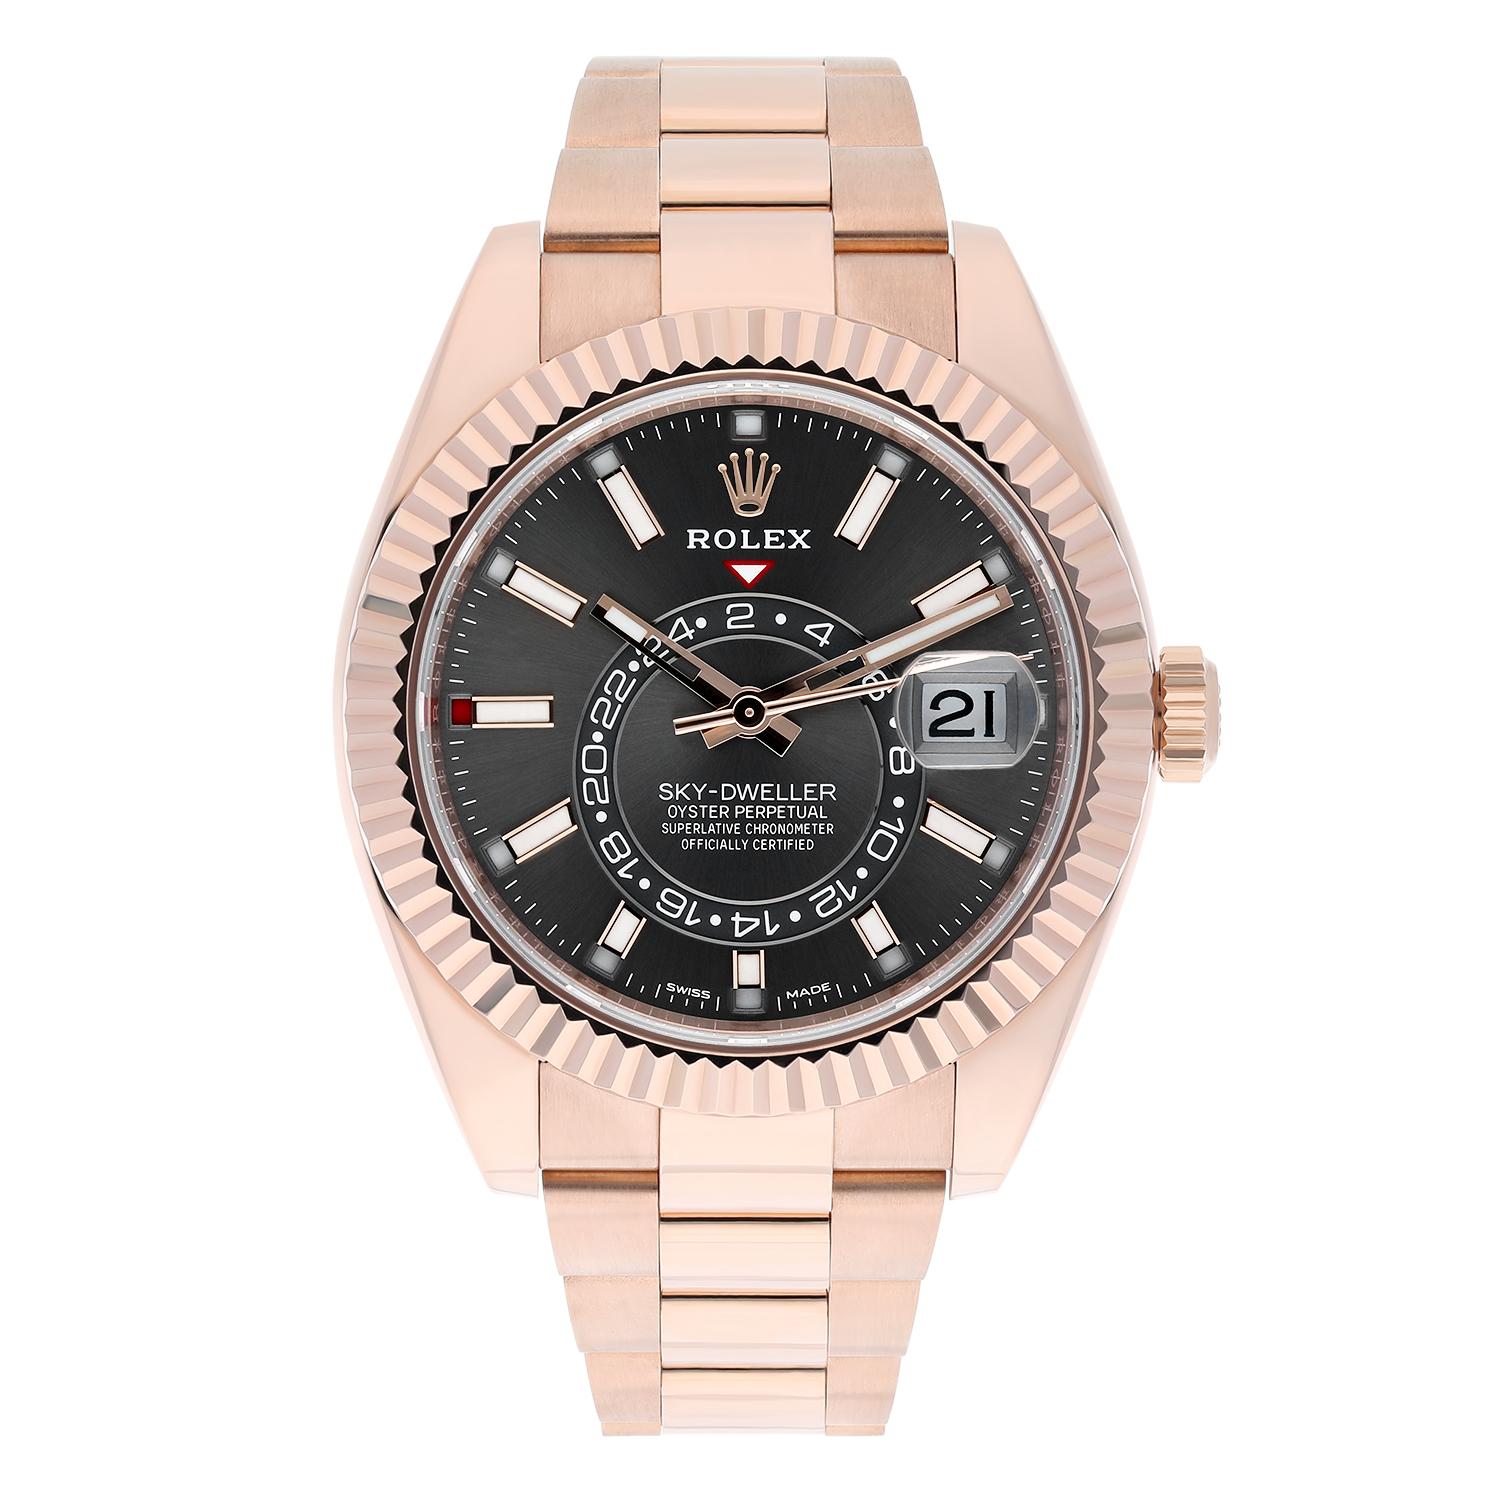 Cette superbe montre Rolex Sky-Dweller de 42 mm est dotée d'un boîtier et d'un bracelet en or rose et d'une lunette cannelée rotative bidirectionnelle. Le cadran en rhodium avec index bâtons et motif soleil ajoute une touche d'élégance à ce luxueux